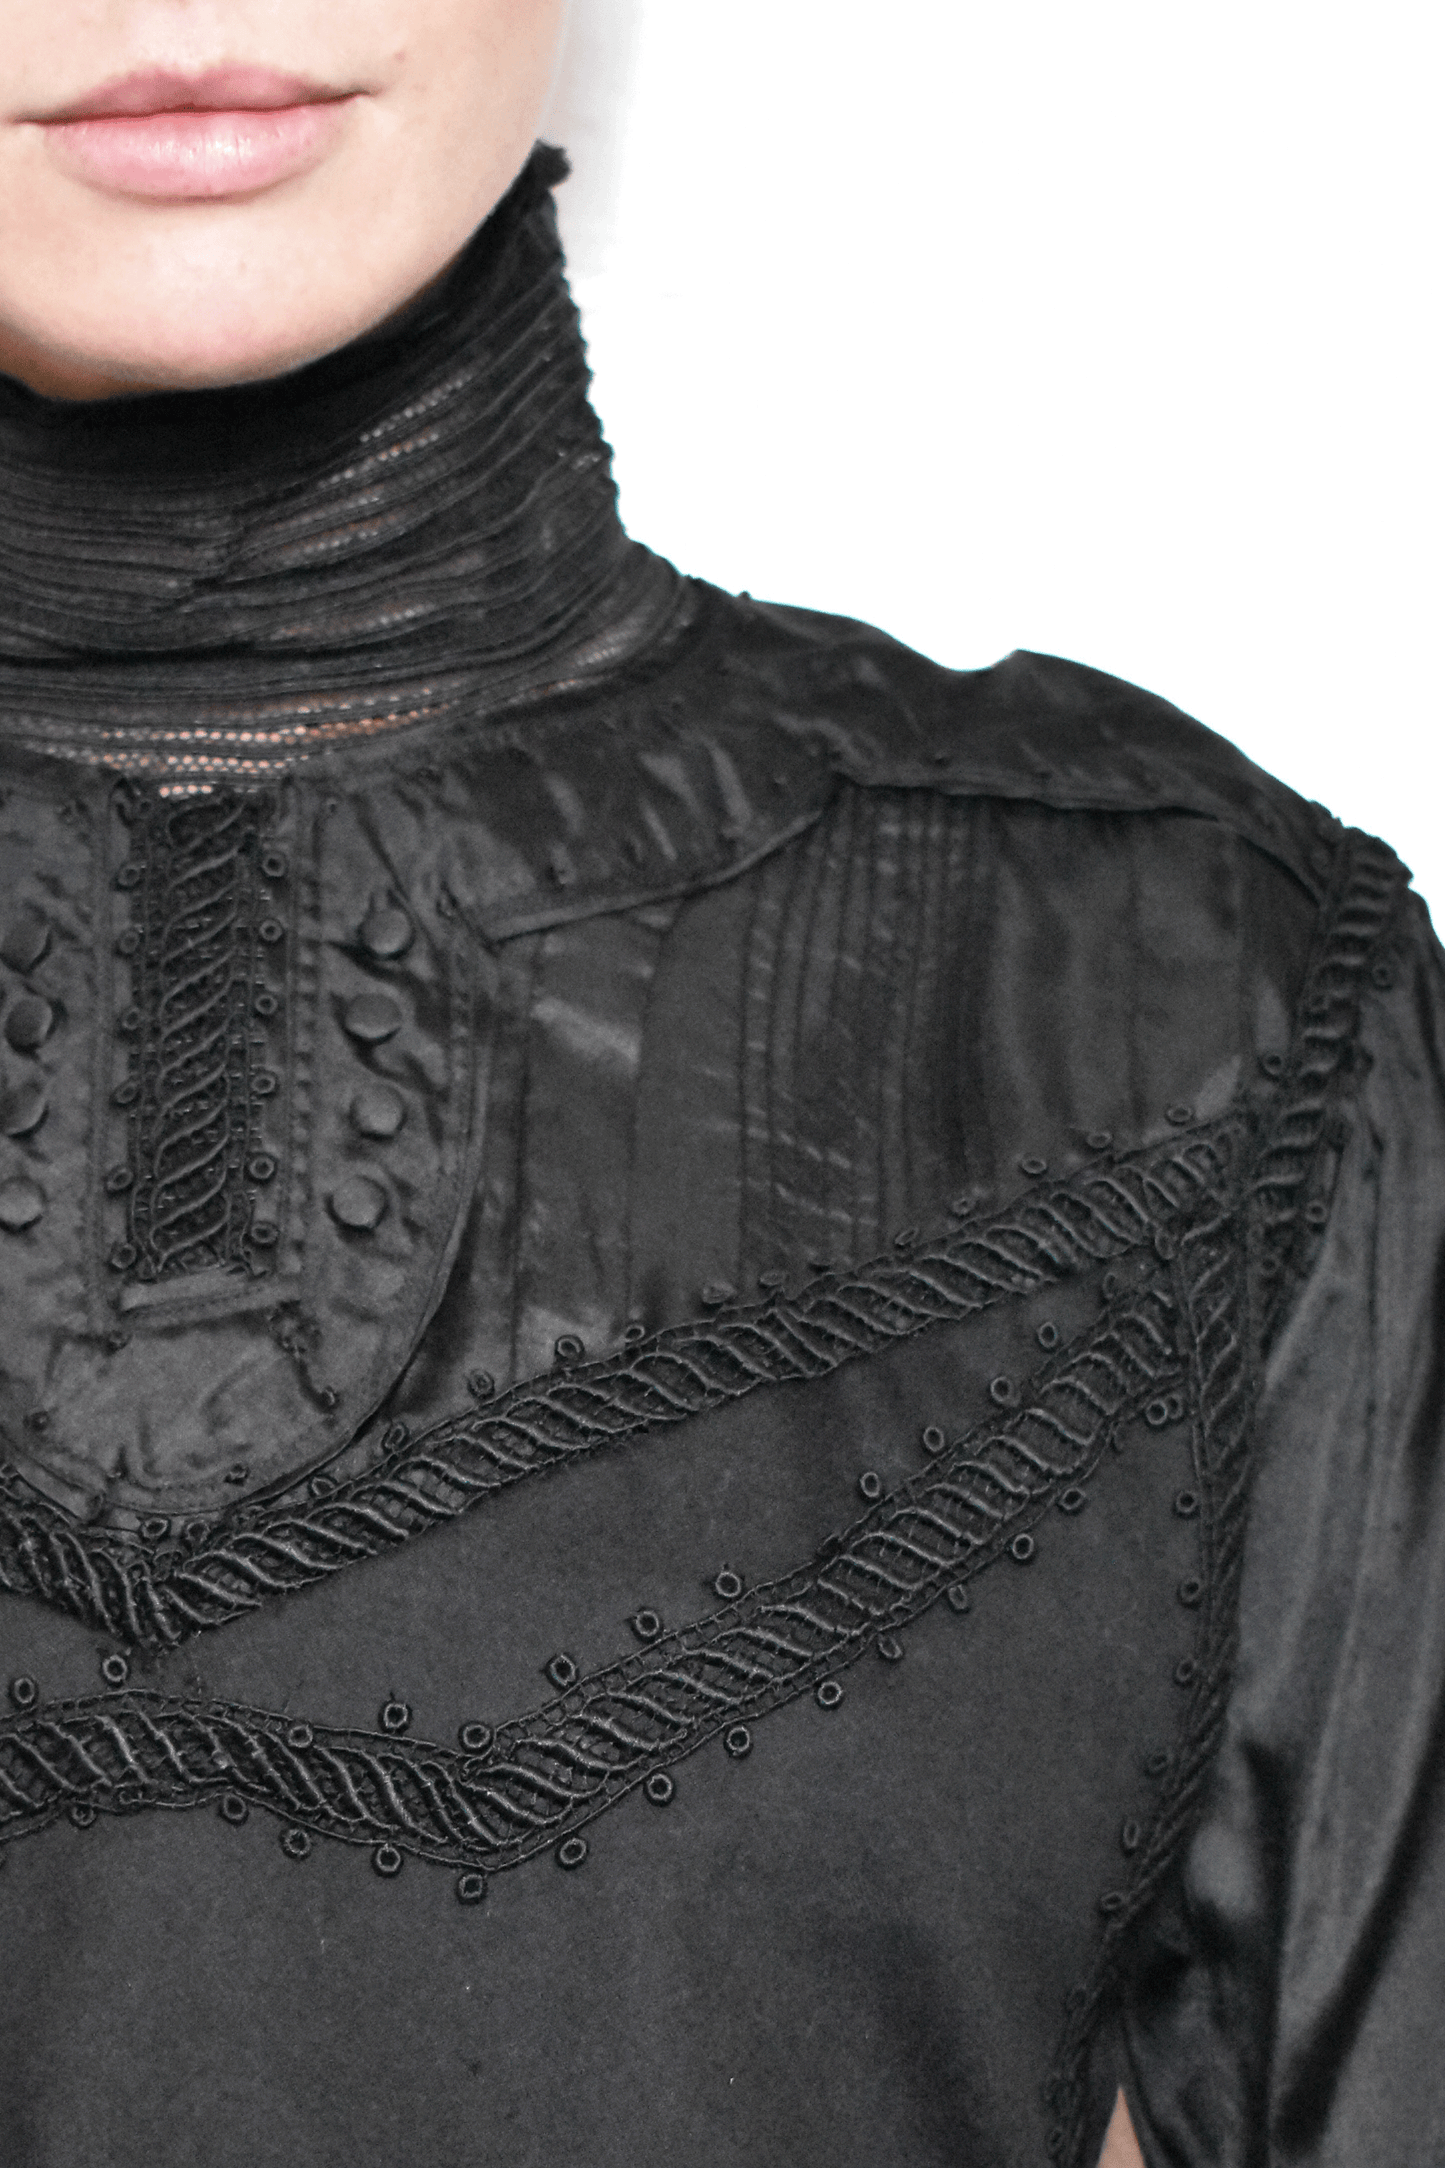 Antique Black Victorian Blouse